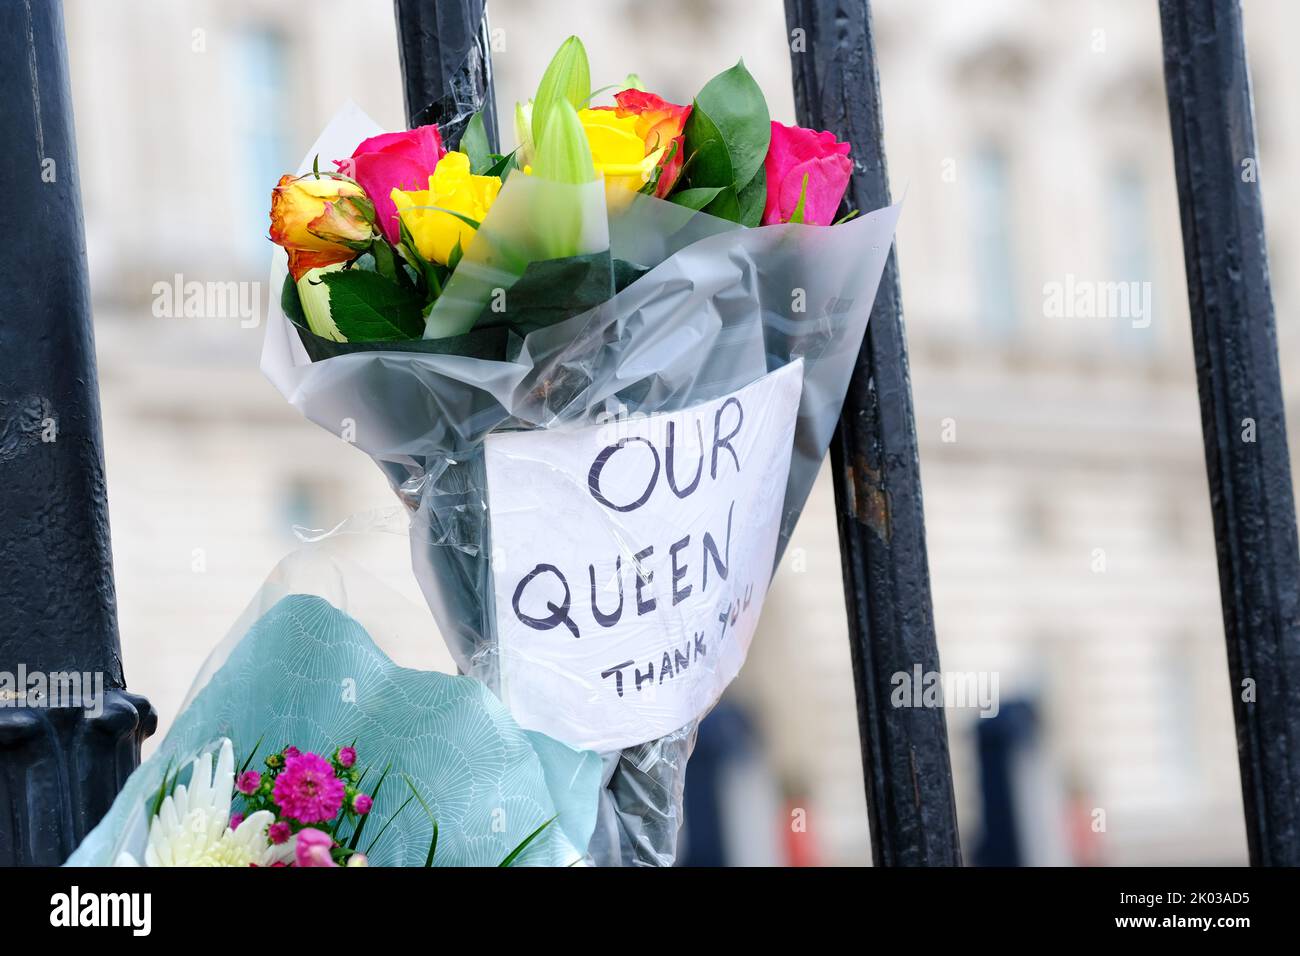 Buckingham Palace, Londres, Royaume-Uni – vendredi 9th septembre 2022 – notre Reine - Merci - un message sur les fleurs à l'extérieur de Buckingham Palace alors que la Grande-Bretagne pleure la mort de la reine Elizabeth II Photo Steven May / Alamy Live News Banque D'Images